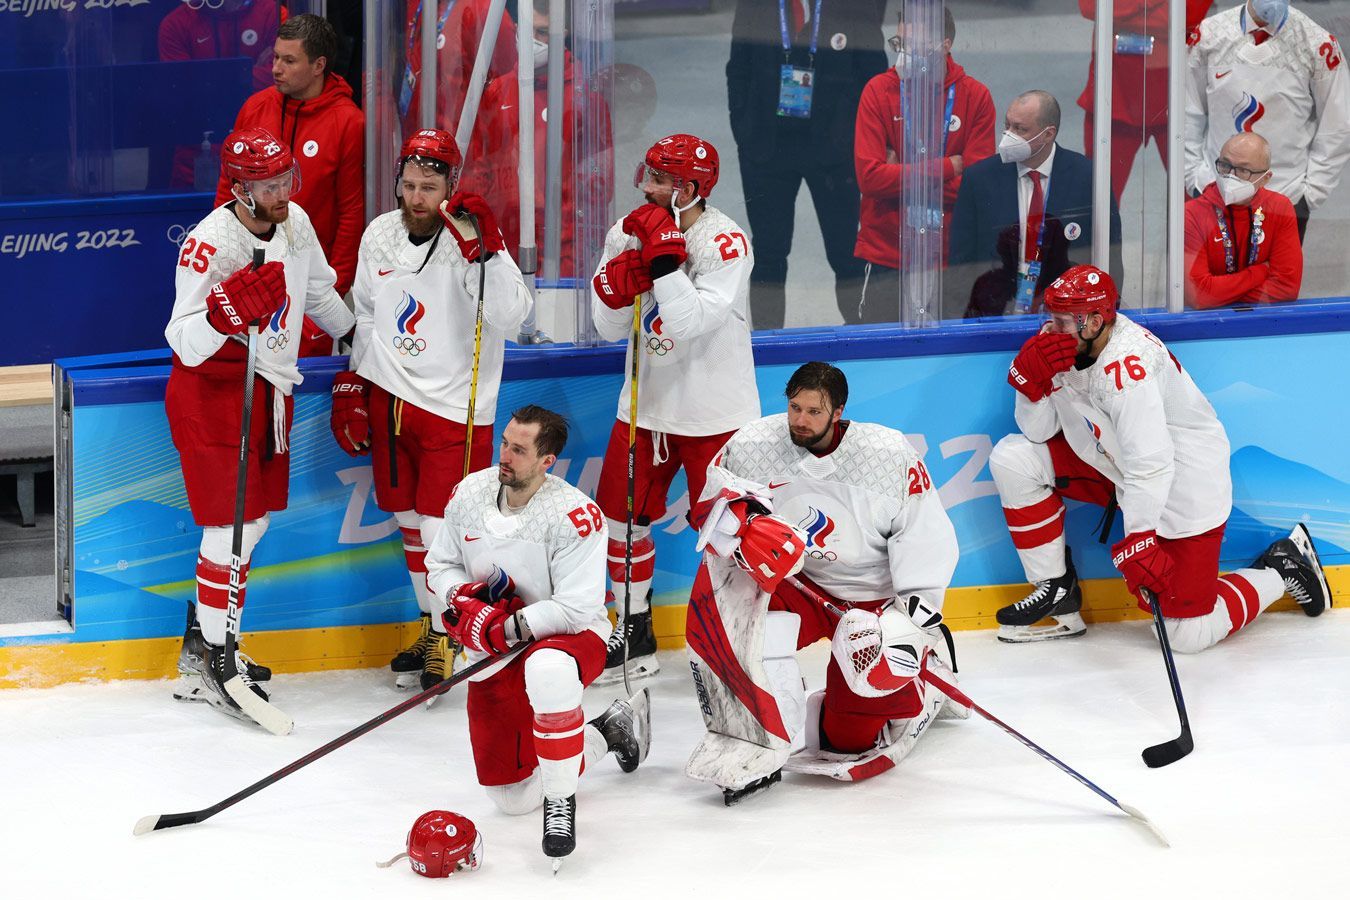 Сильнейшая команда в хоккее. Григоренко сборная по хоккею 2022. Сборная России по хоккею на Олимпиаду 2022 финал. Олимпийские игры в Пекине 2022 хоккей.